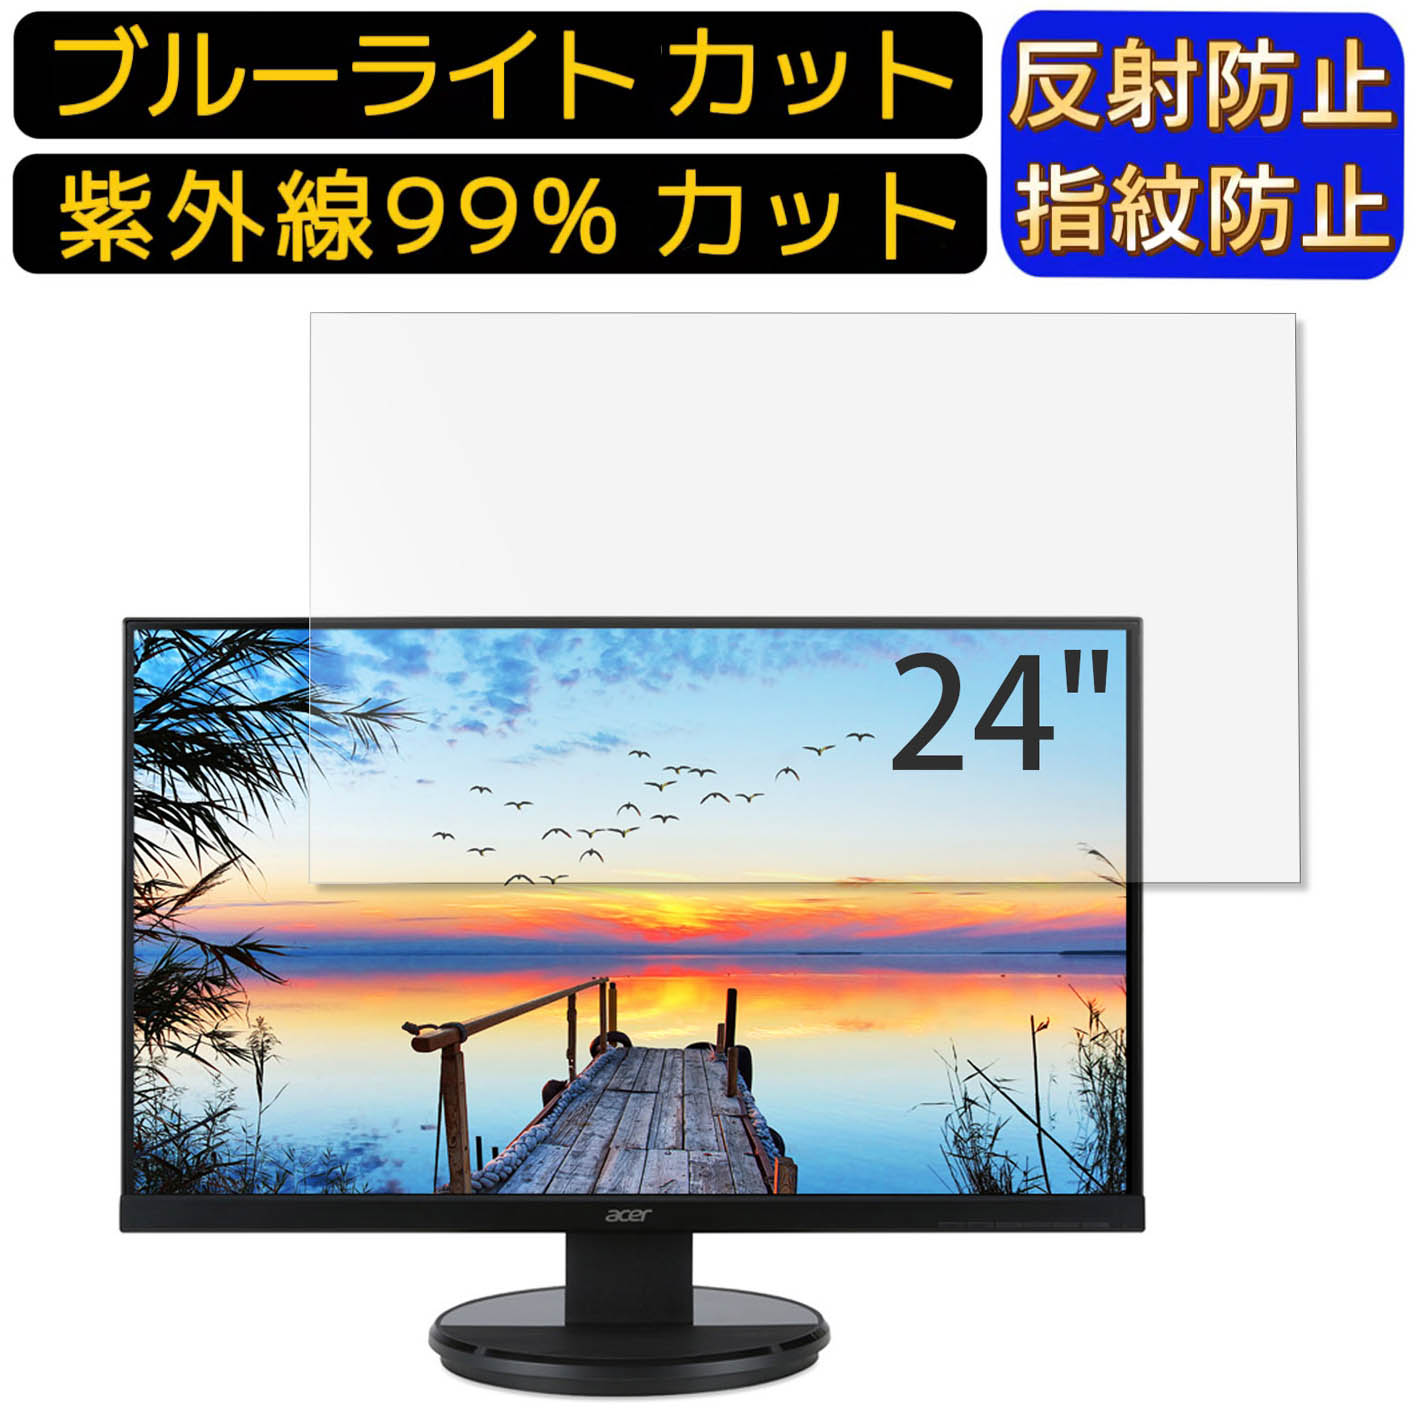 【ポイント2倍】Acer K242HLbid (K2) 24イ